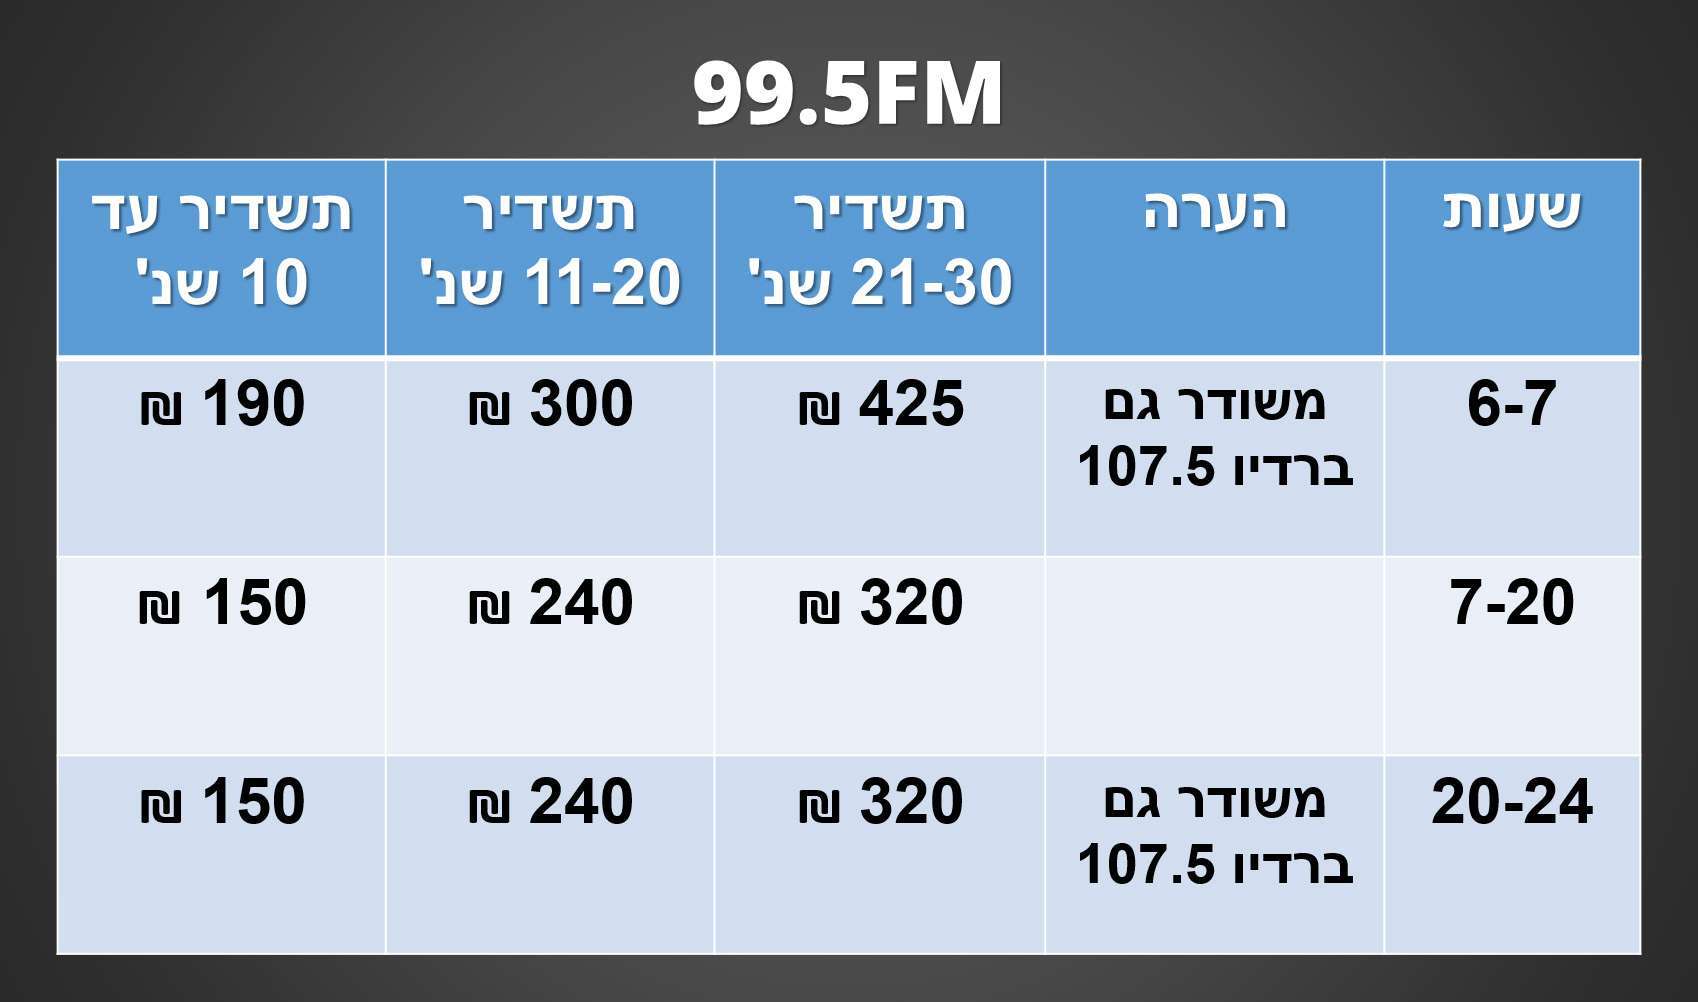 לוח תעריפים לשידור תעמולת הבחירות לרשויות המקומיות - רדיו חם אש 99.5FM